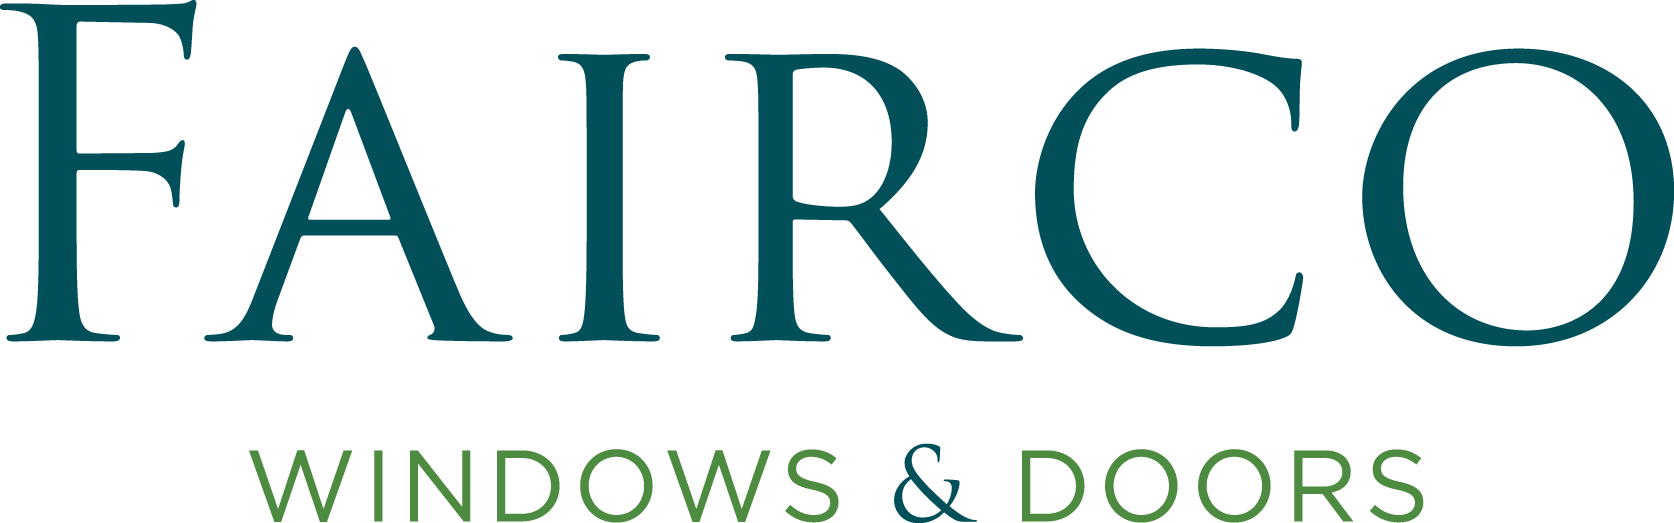 Fairco logo